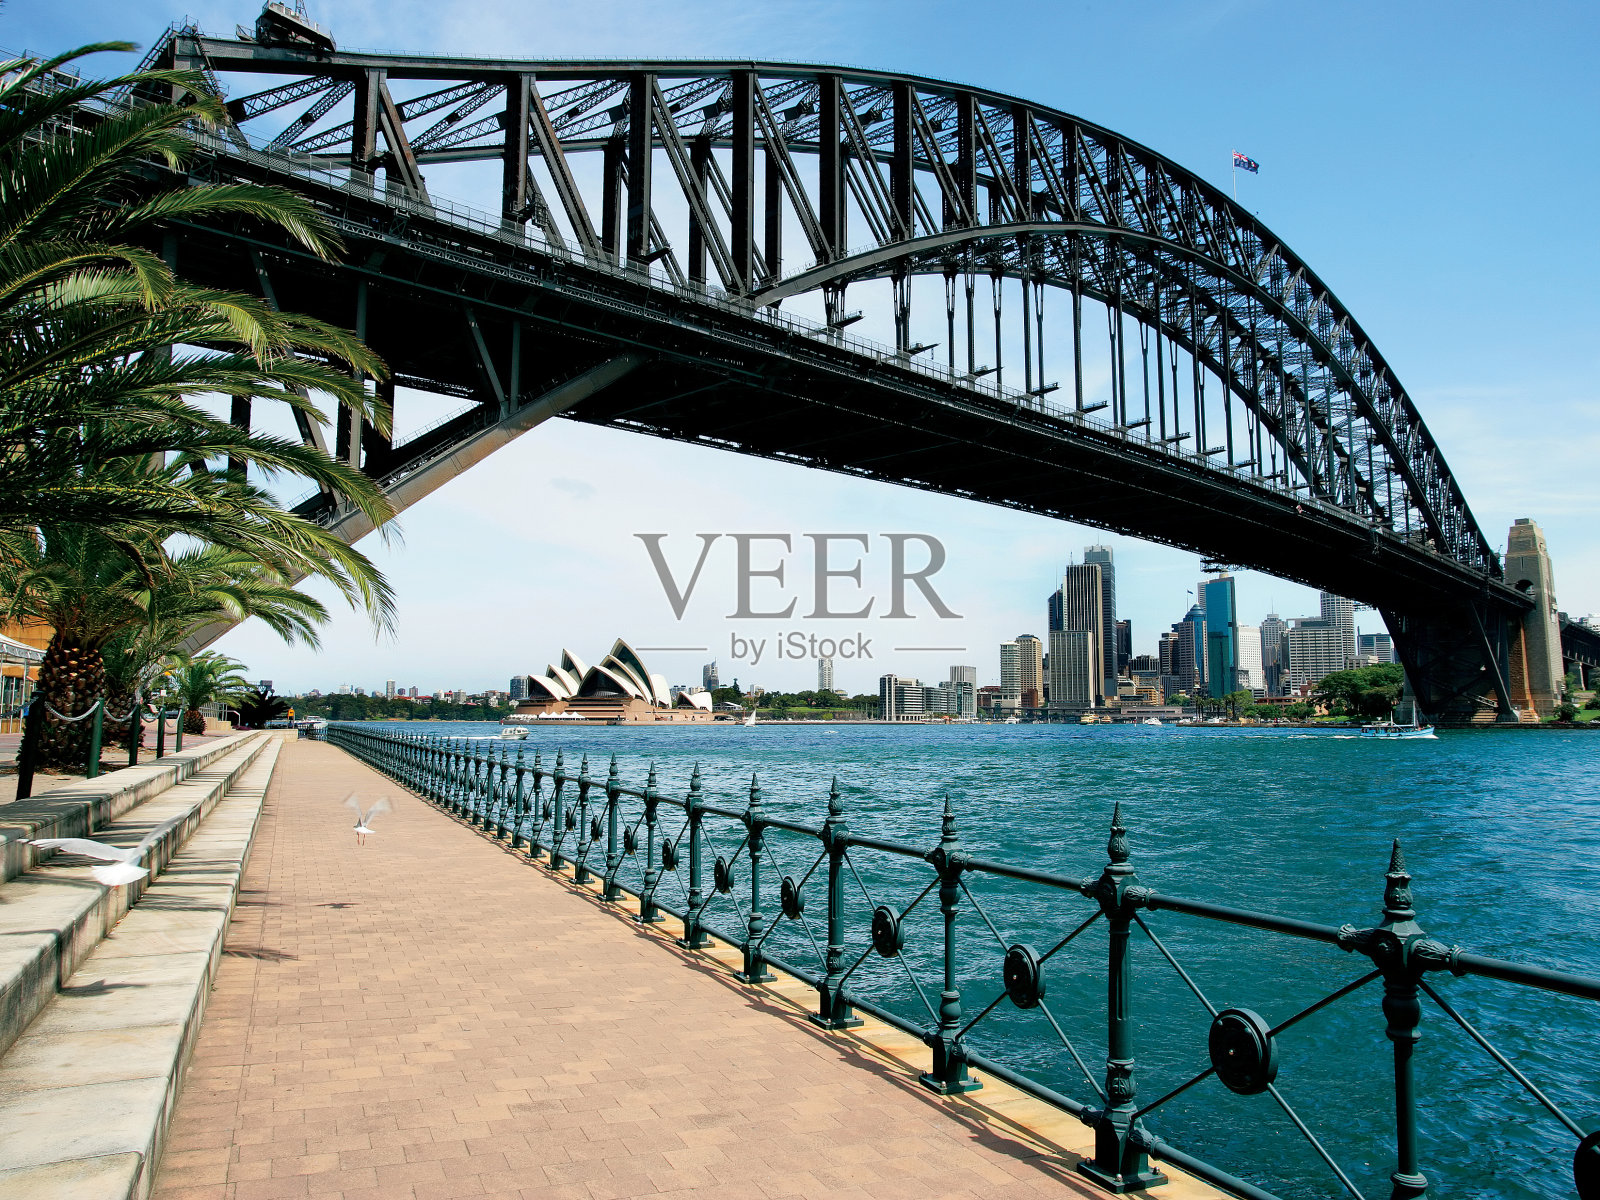 悉尼海港大桥照片摄影图片